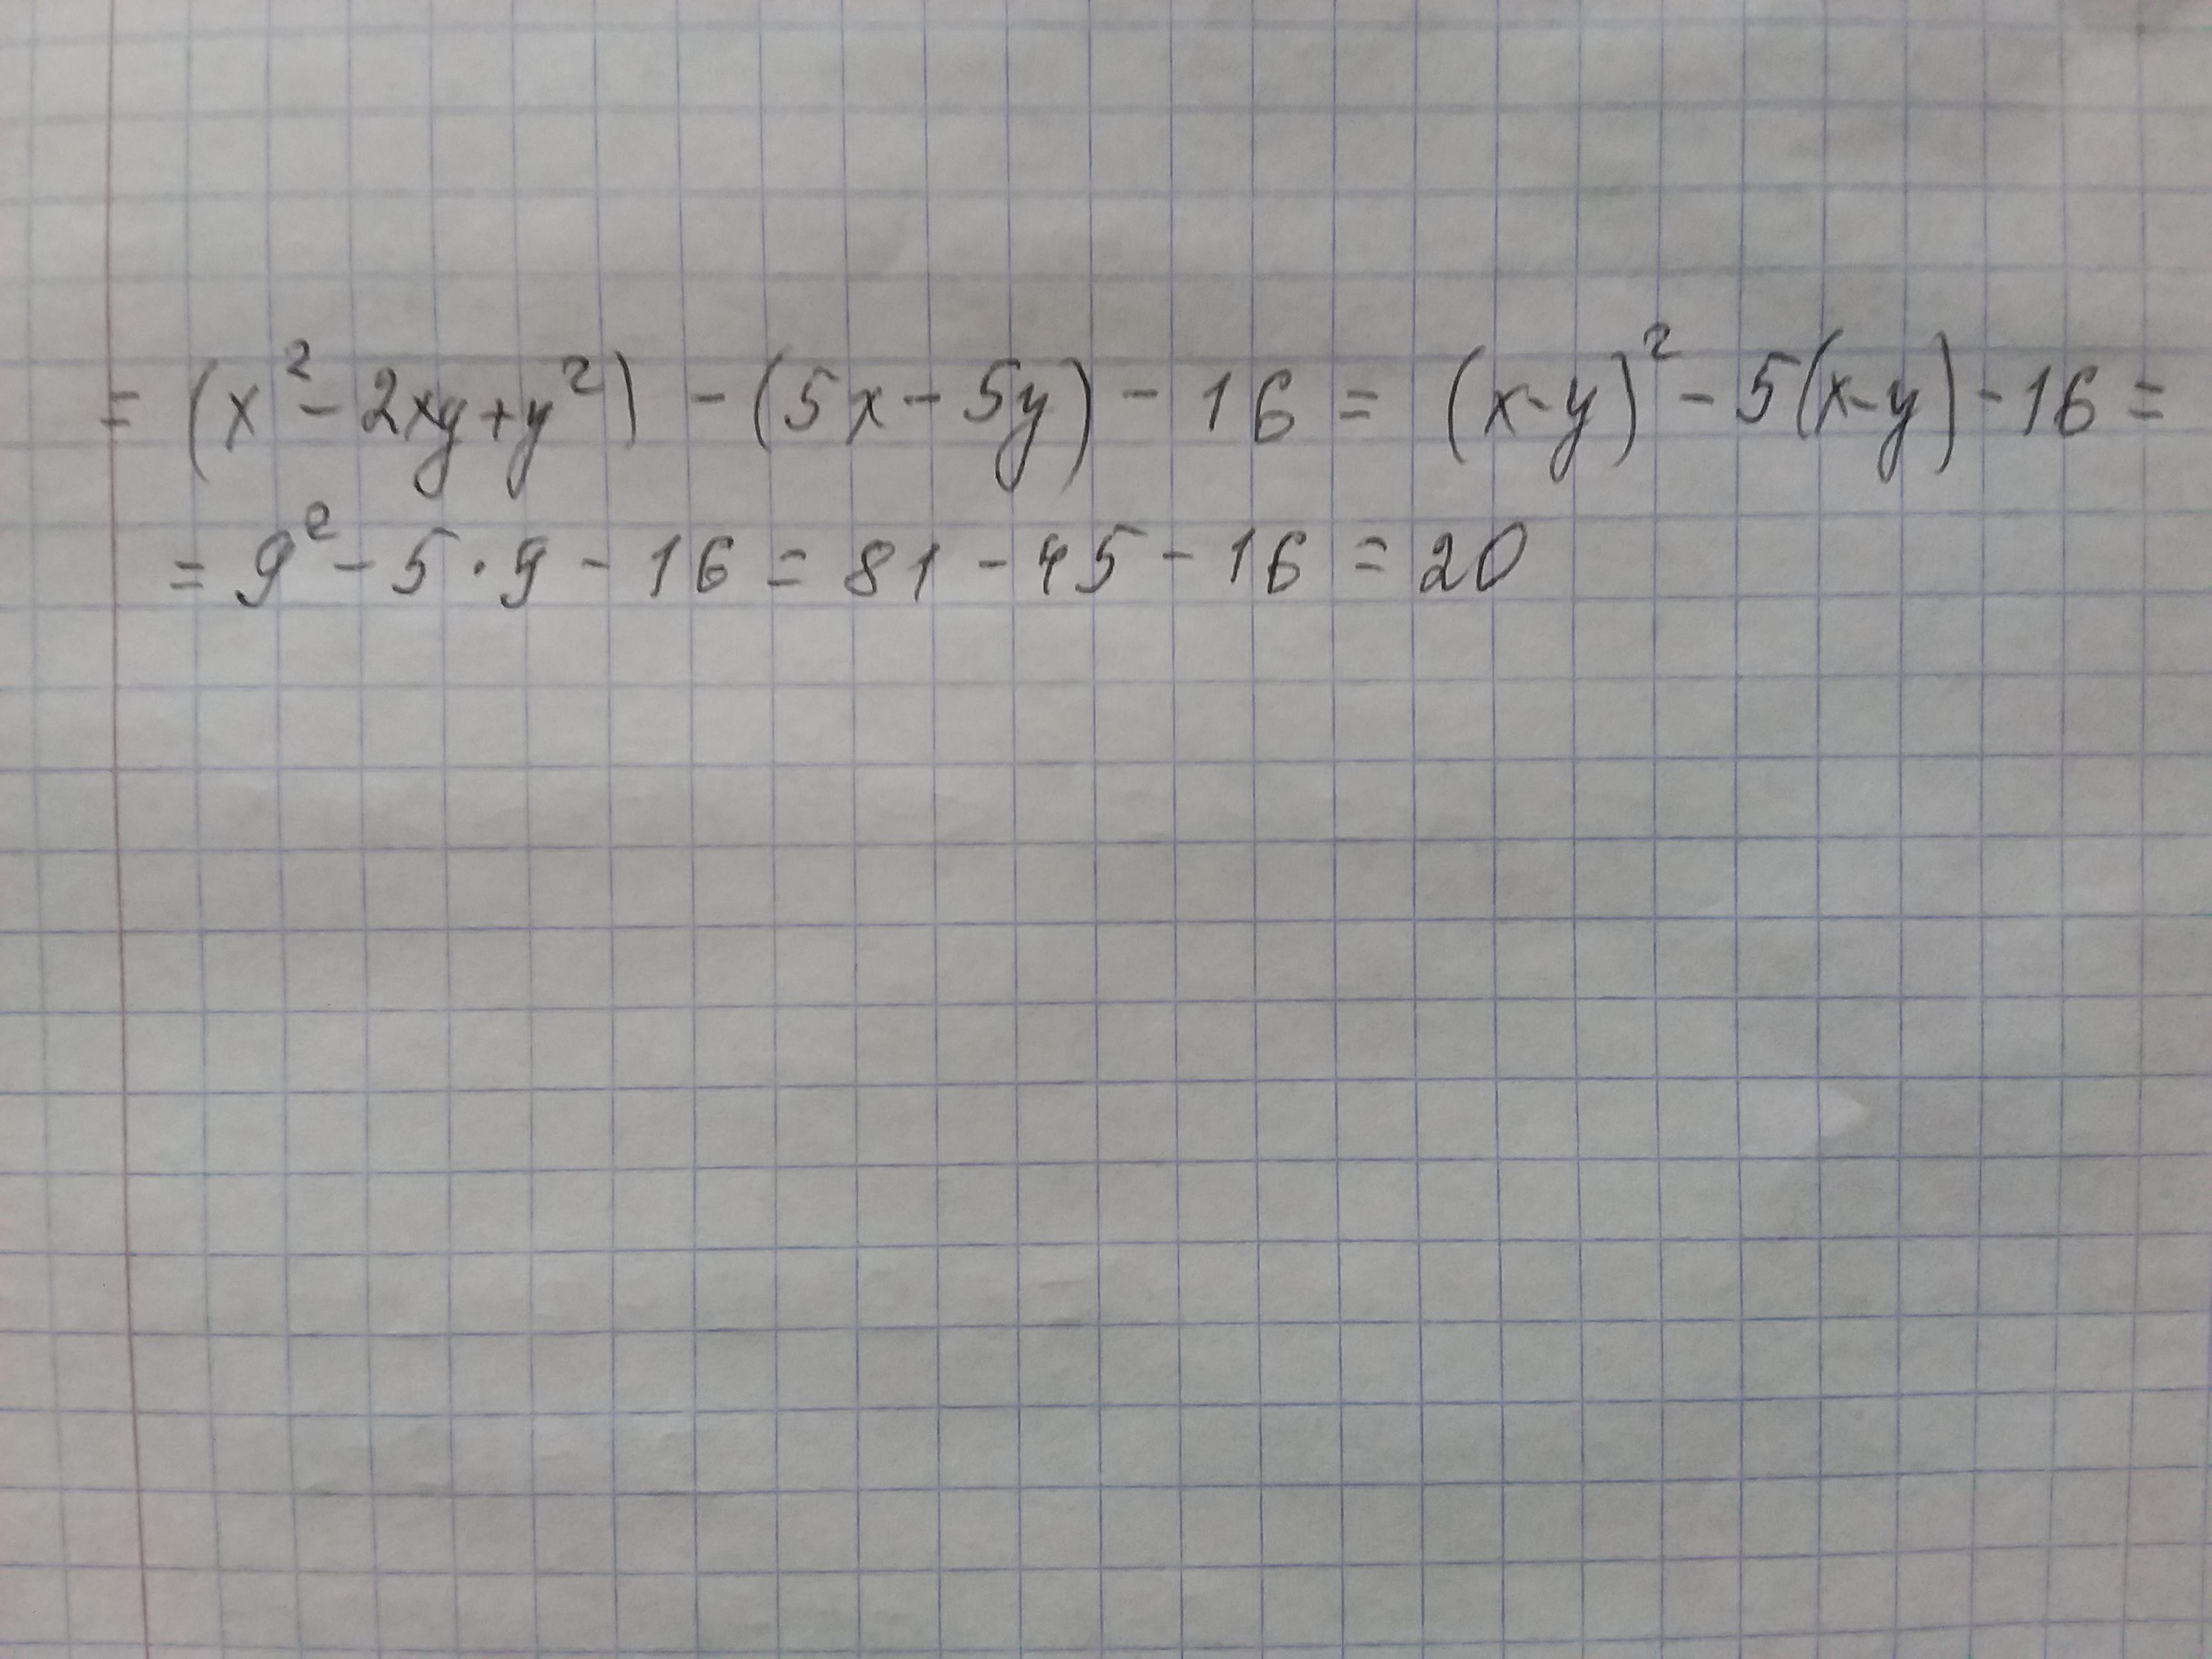 Выражение x2 2xy y2